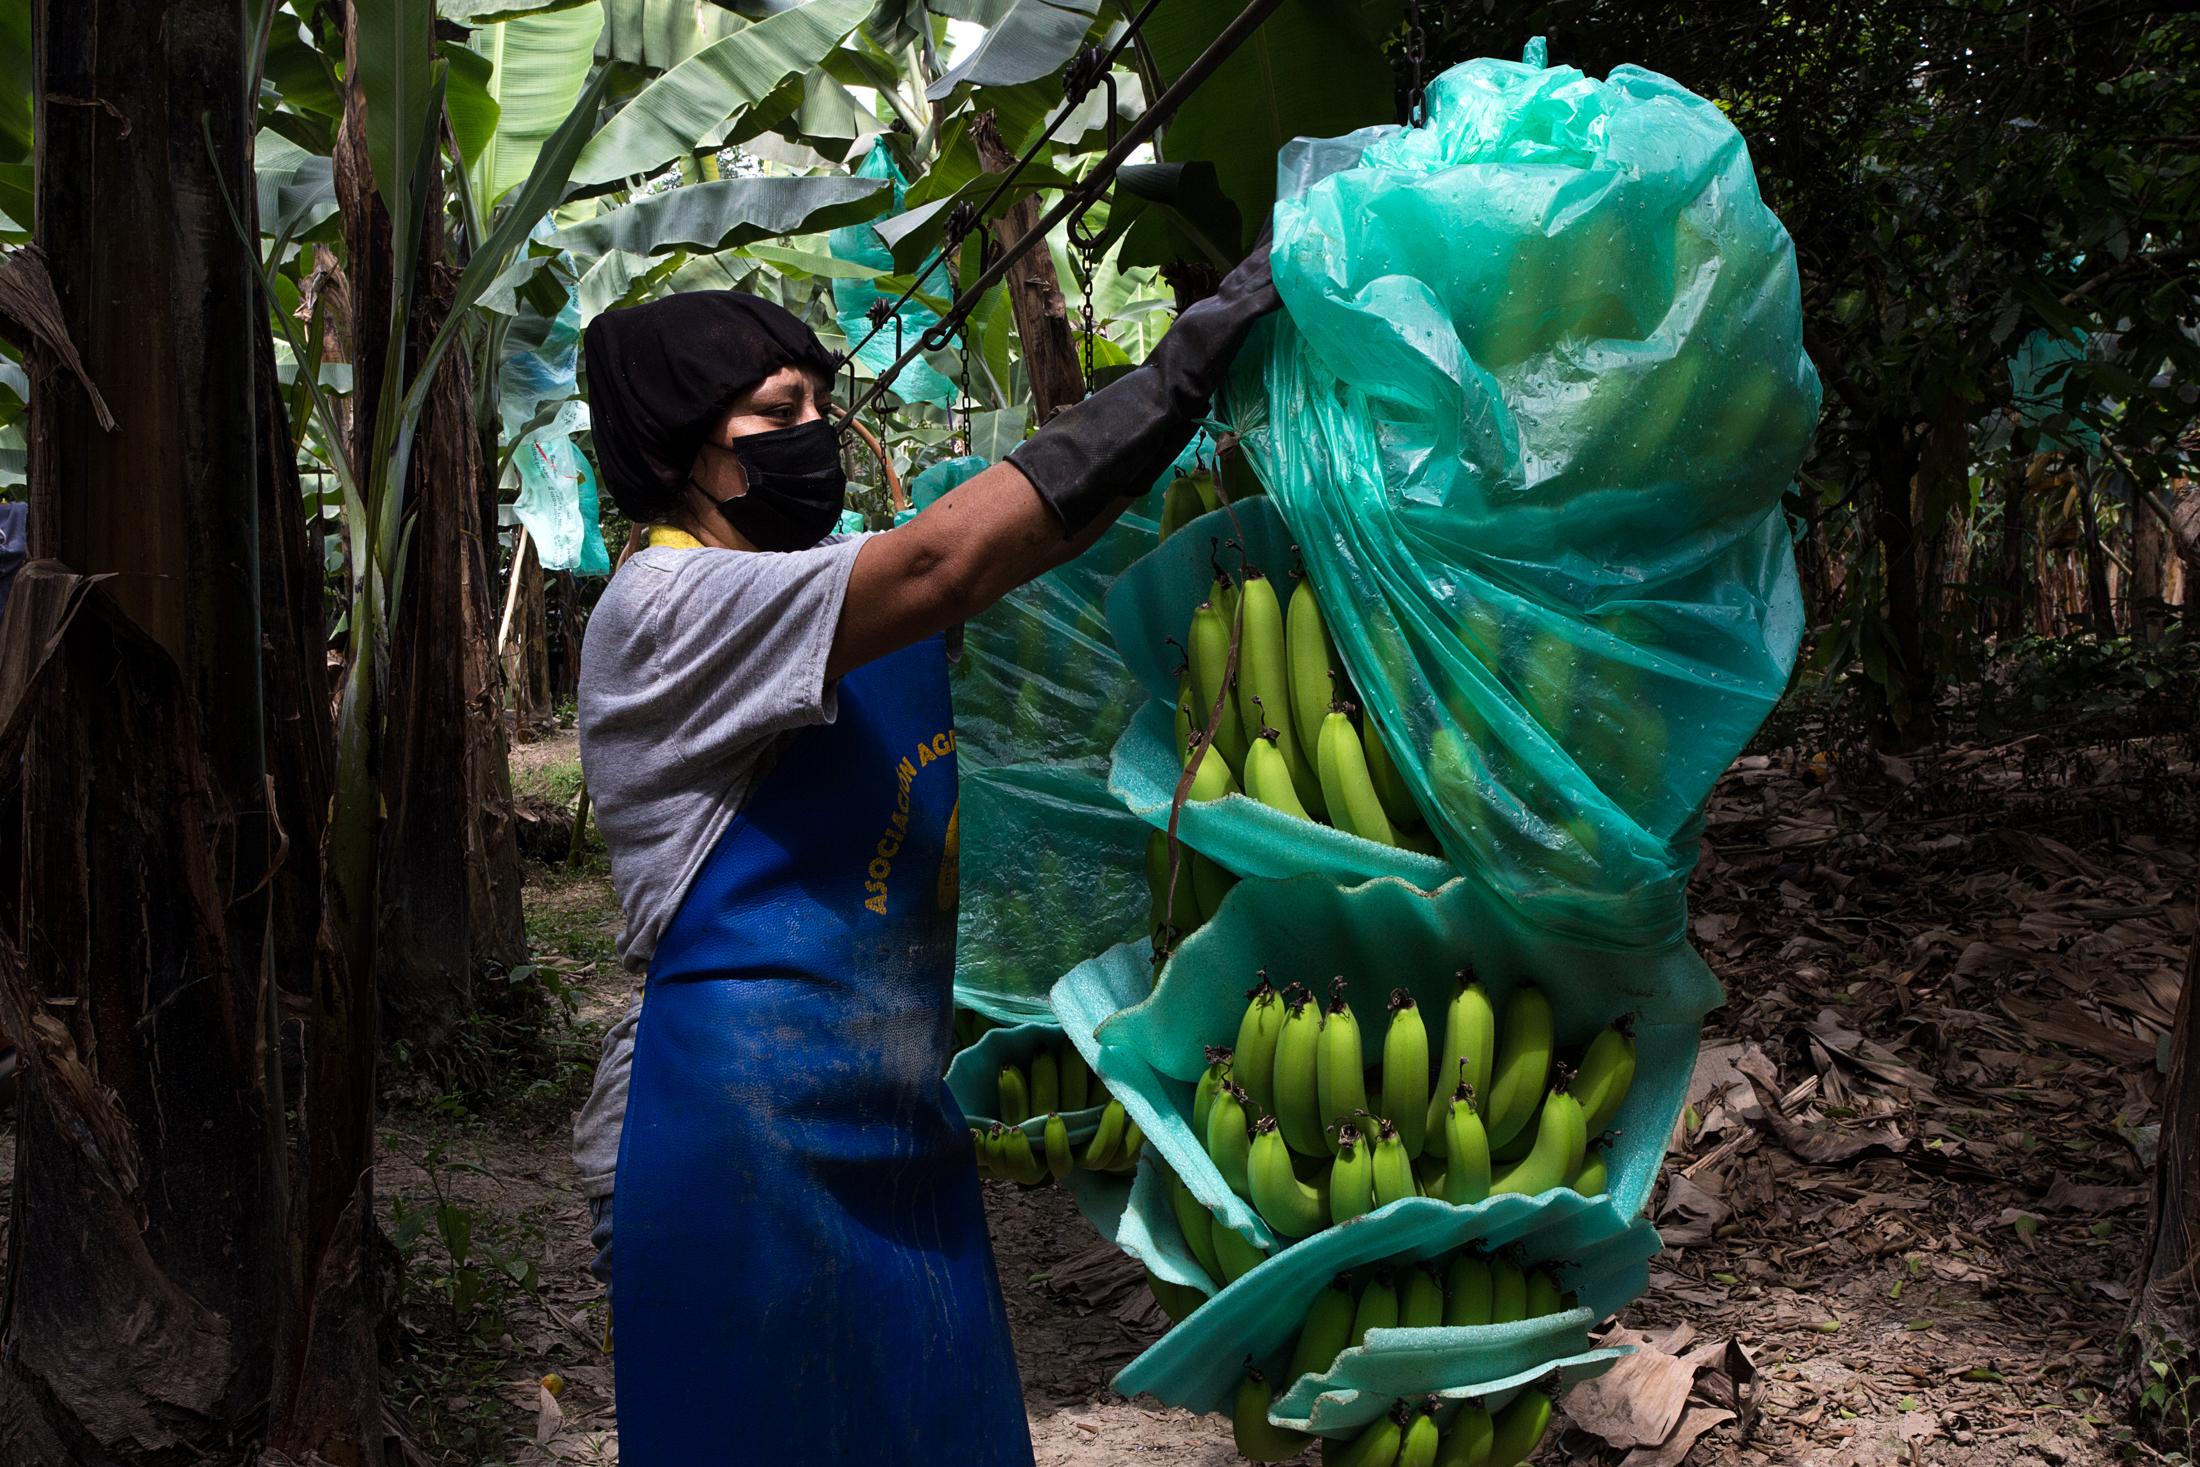 Proceso decorte y selección del banano en la finca productora “La Gacela” de la Asociación...